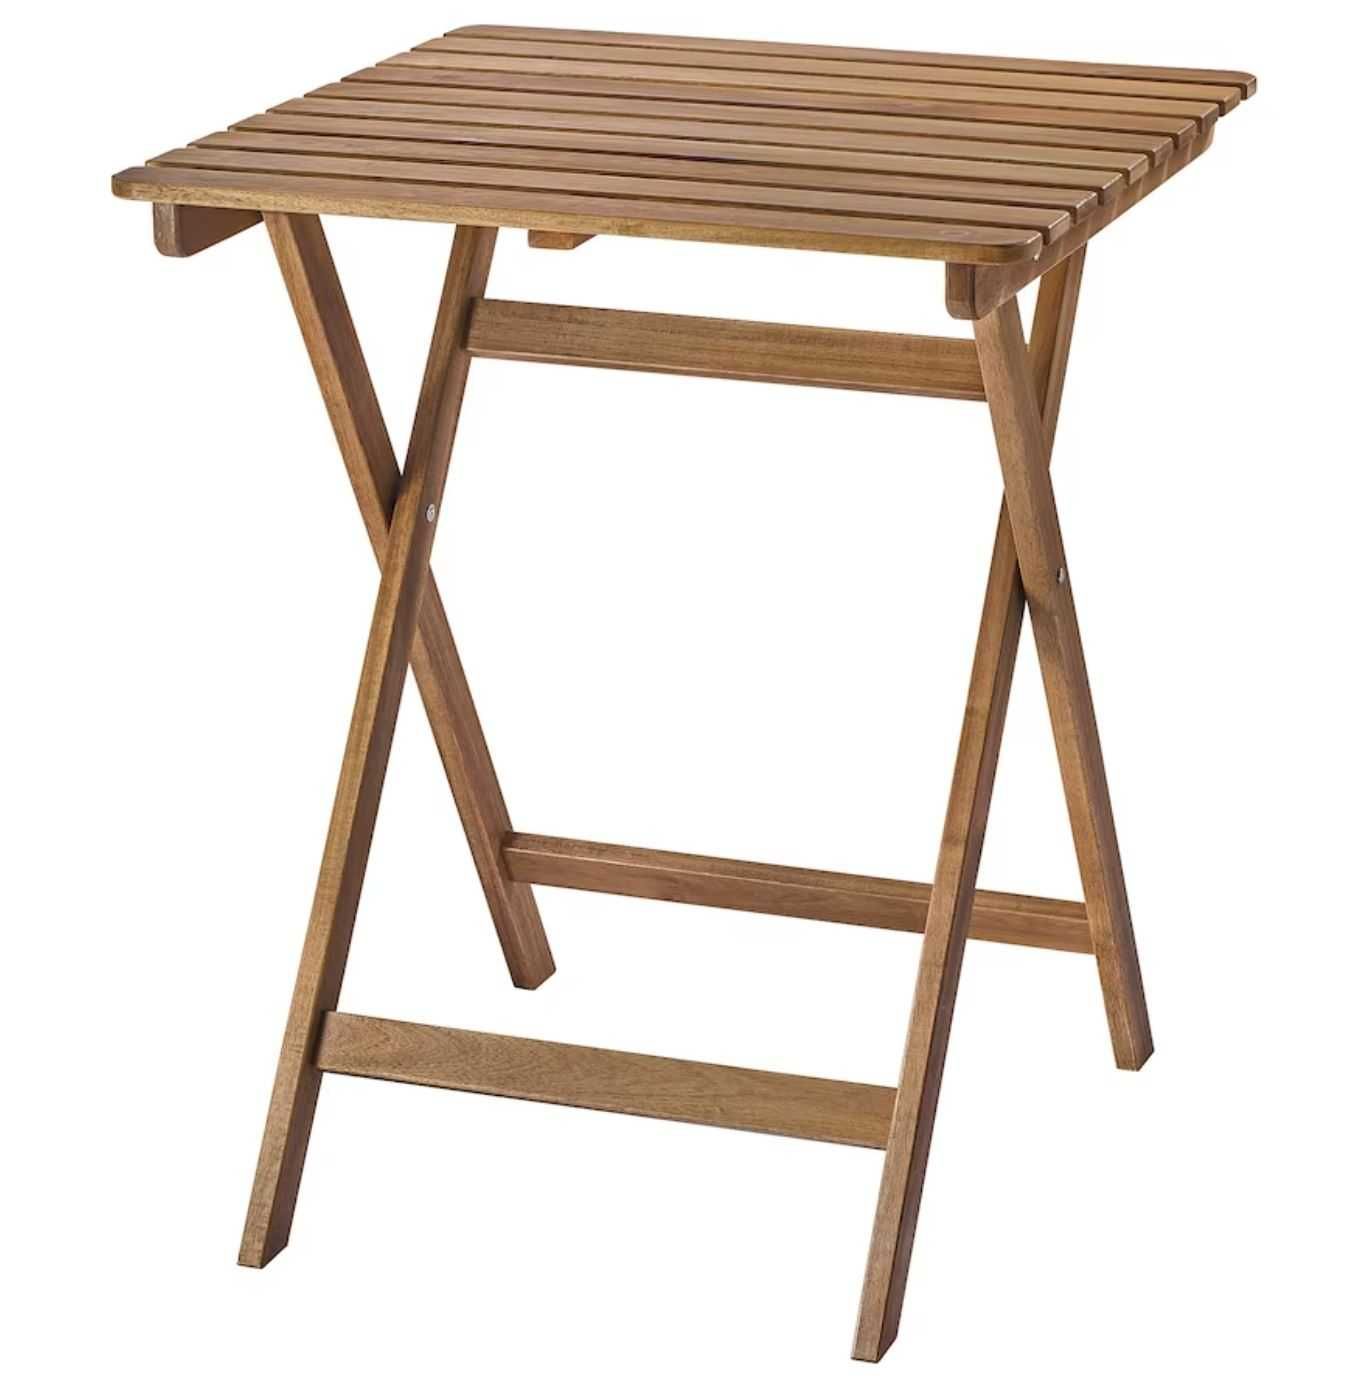 Stół ogrodowy, składany | Ikea ASKHOLMEN | Nowy